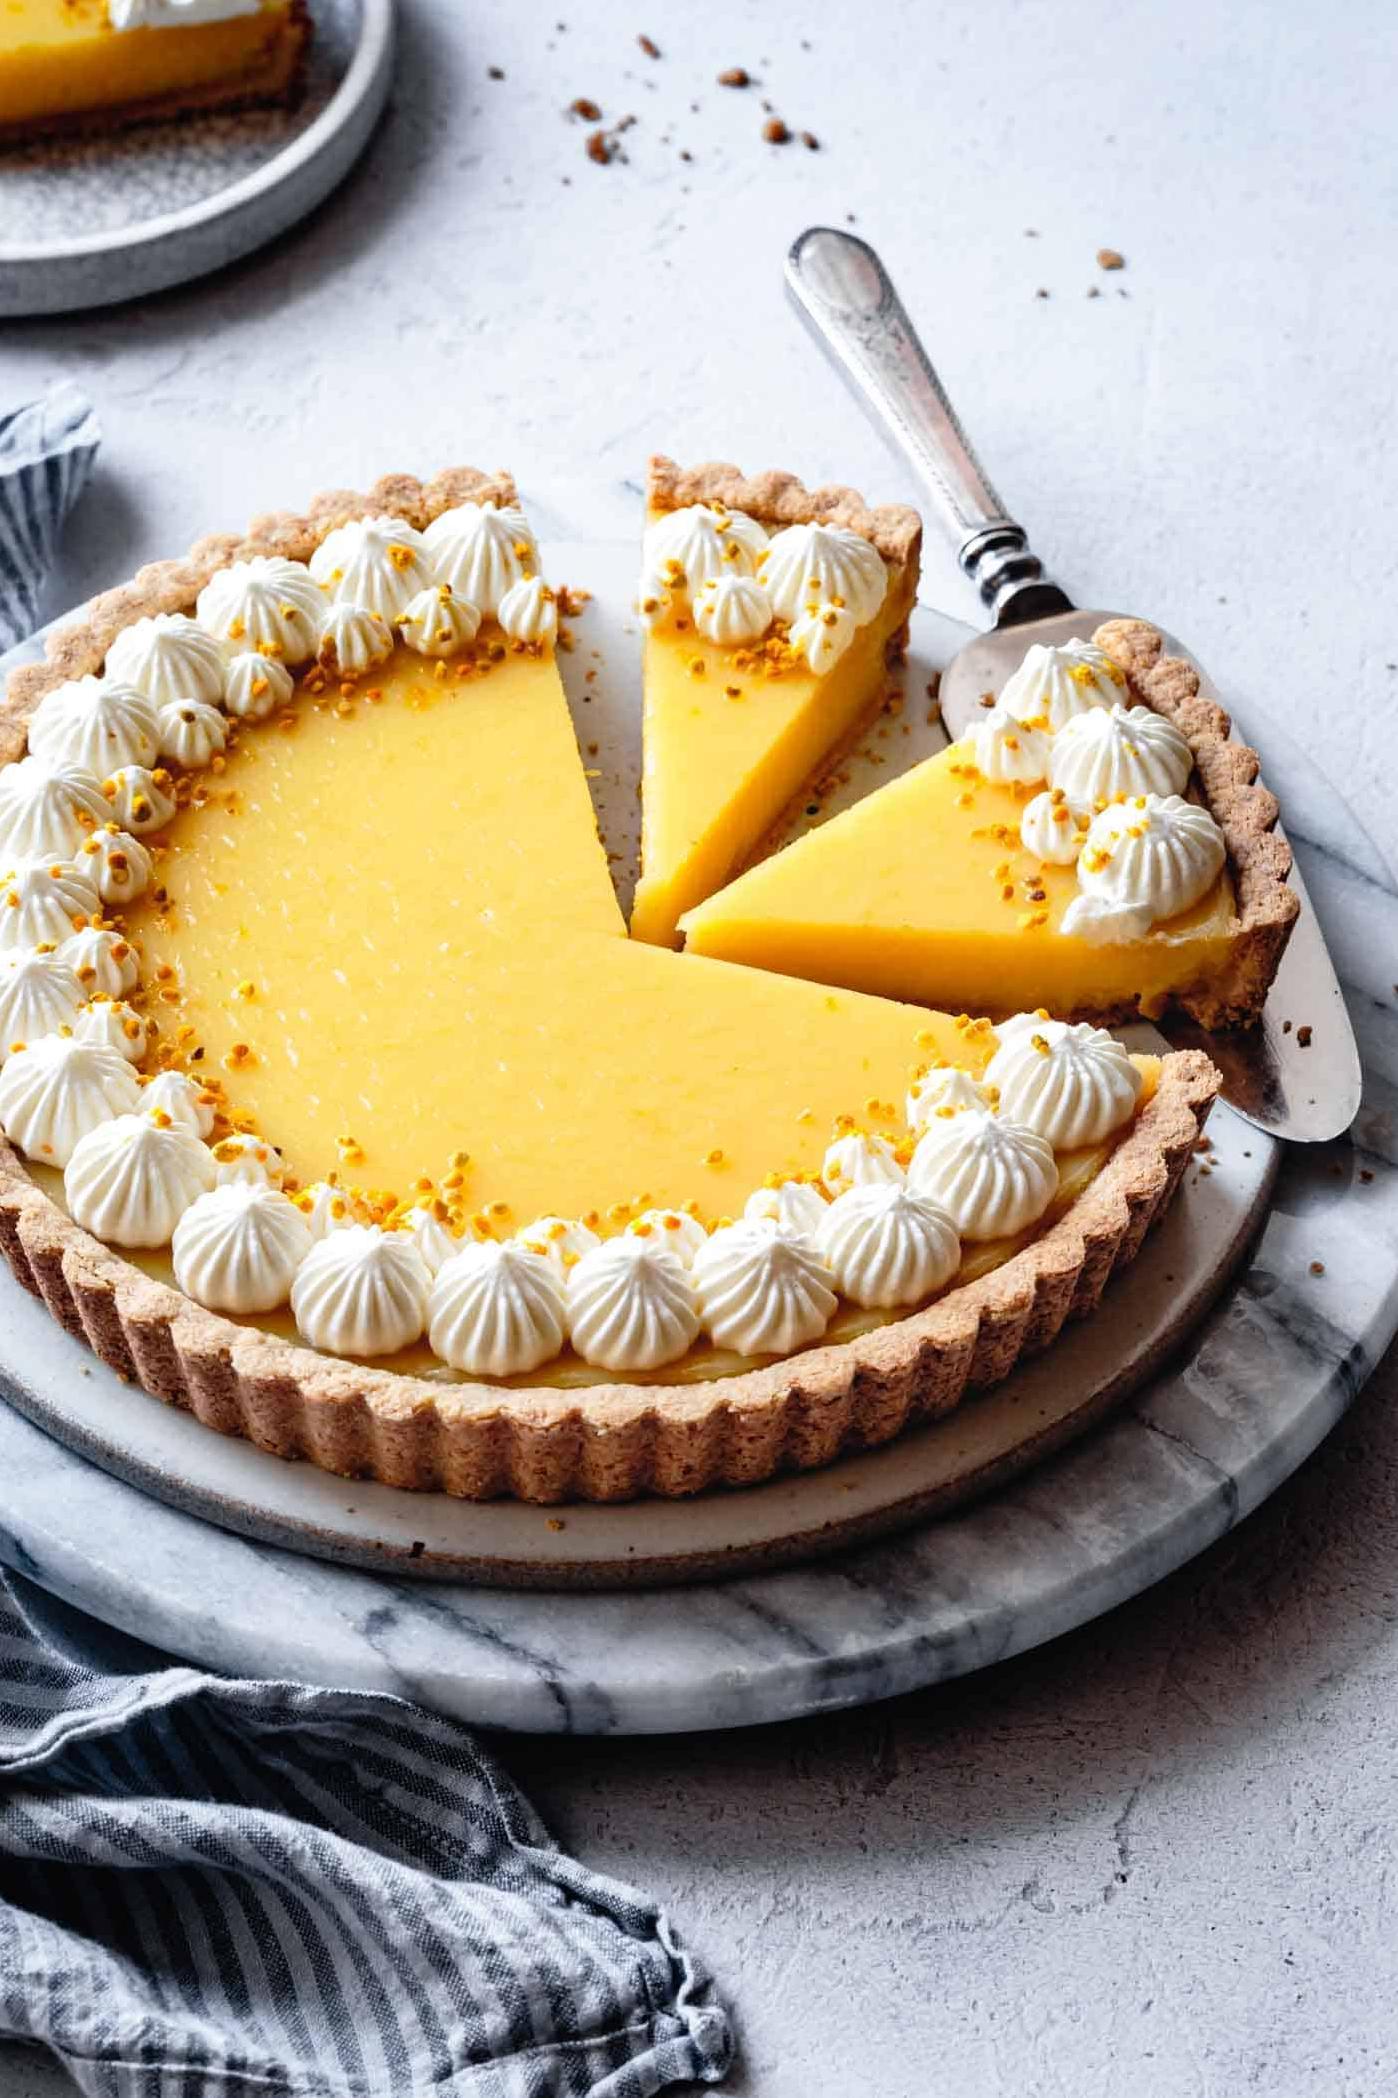  Dessert that’ll make you feel guilt-free.